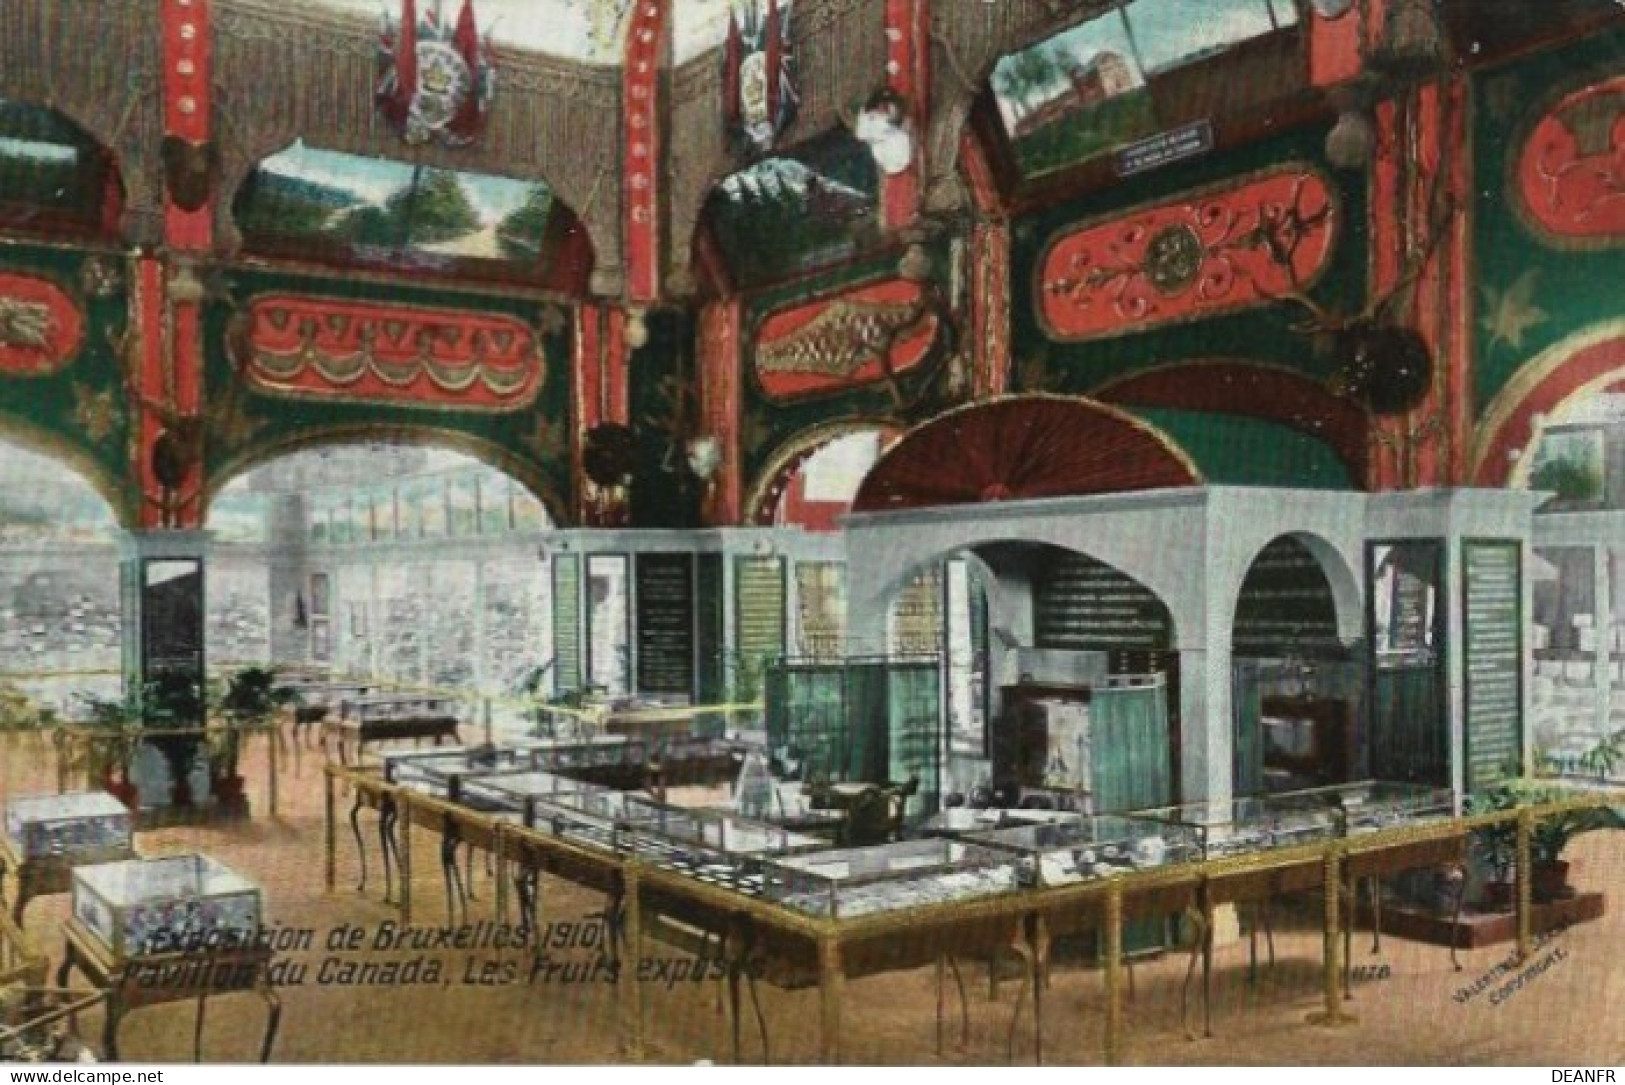 EXPOSITION De BRUXELLES 1910 : Pavillon Canada,Les Fruits Exposés. Carte Impeccable. - Universal Exhibitions